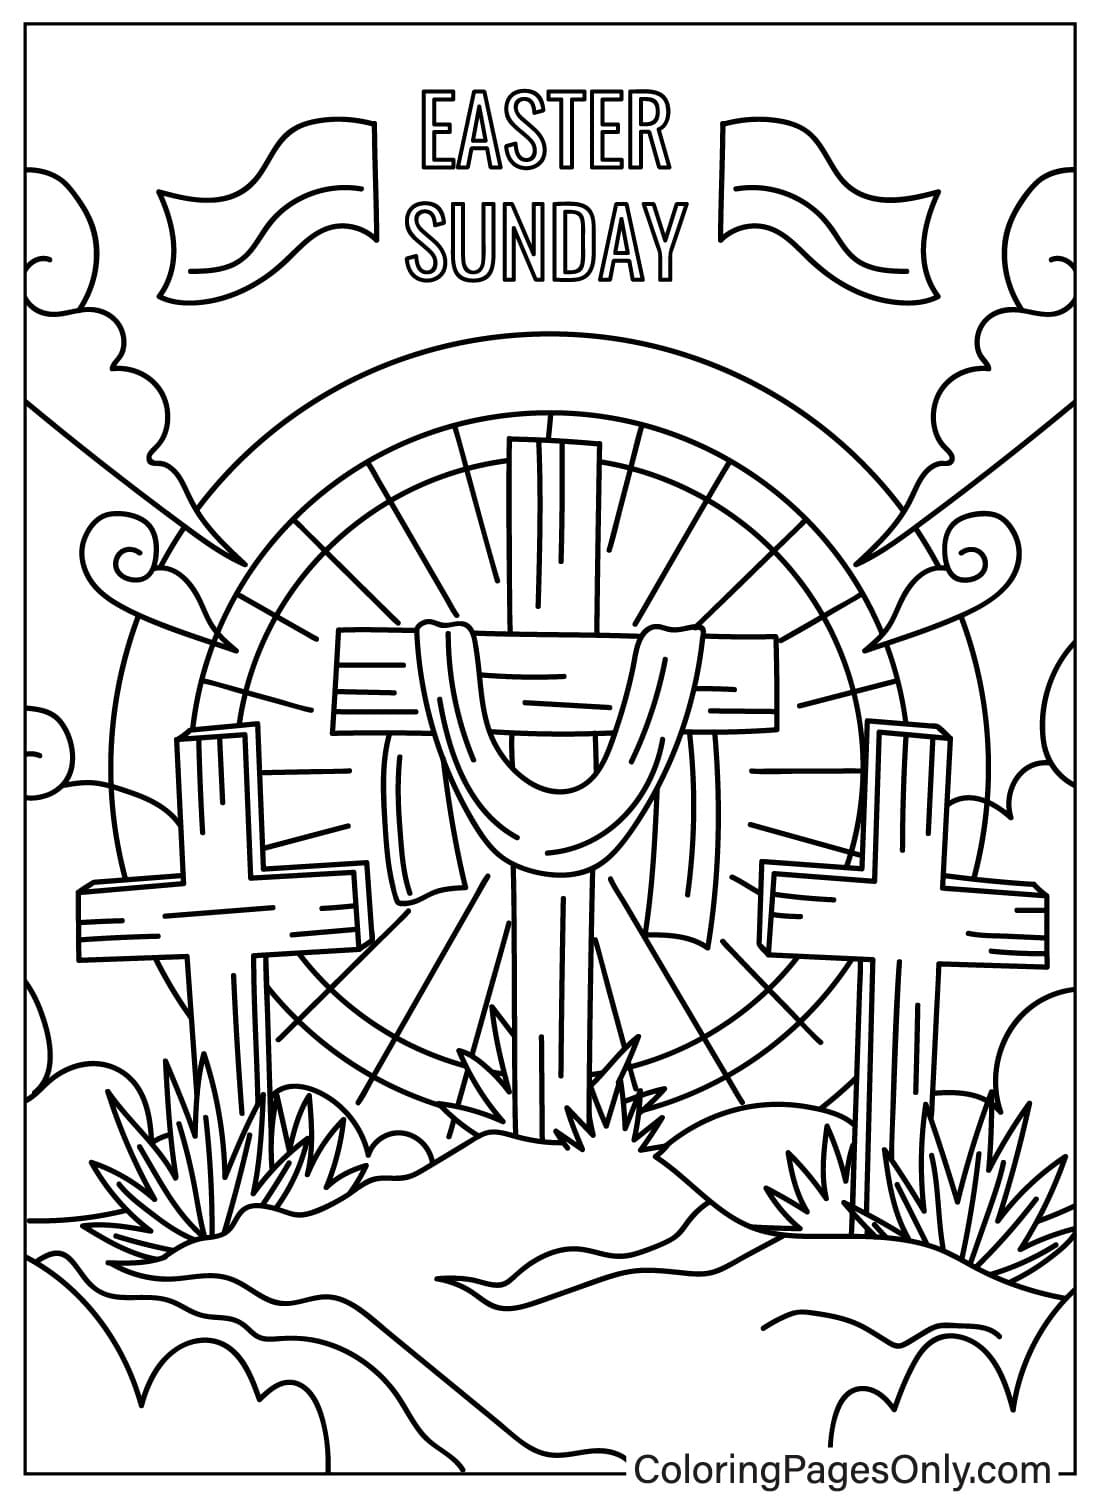 Imprimir la página para colorear de la Cruz de Pascua de la Cruz de Pascua